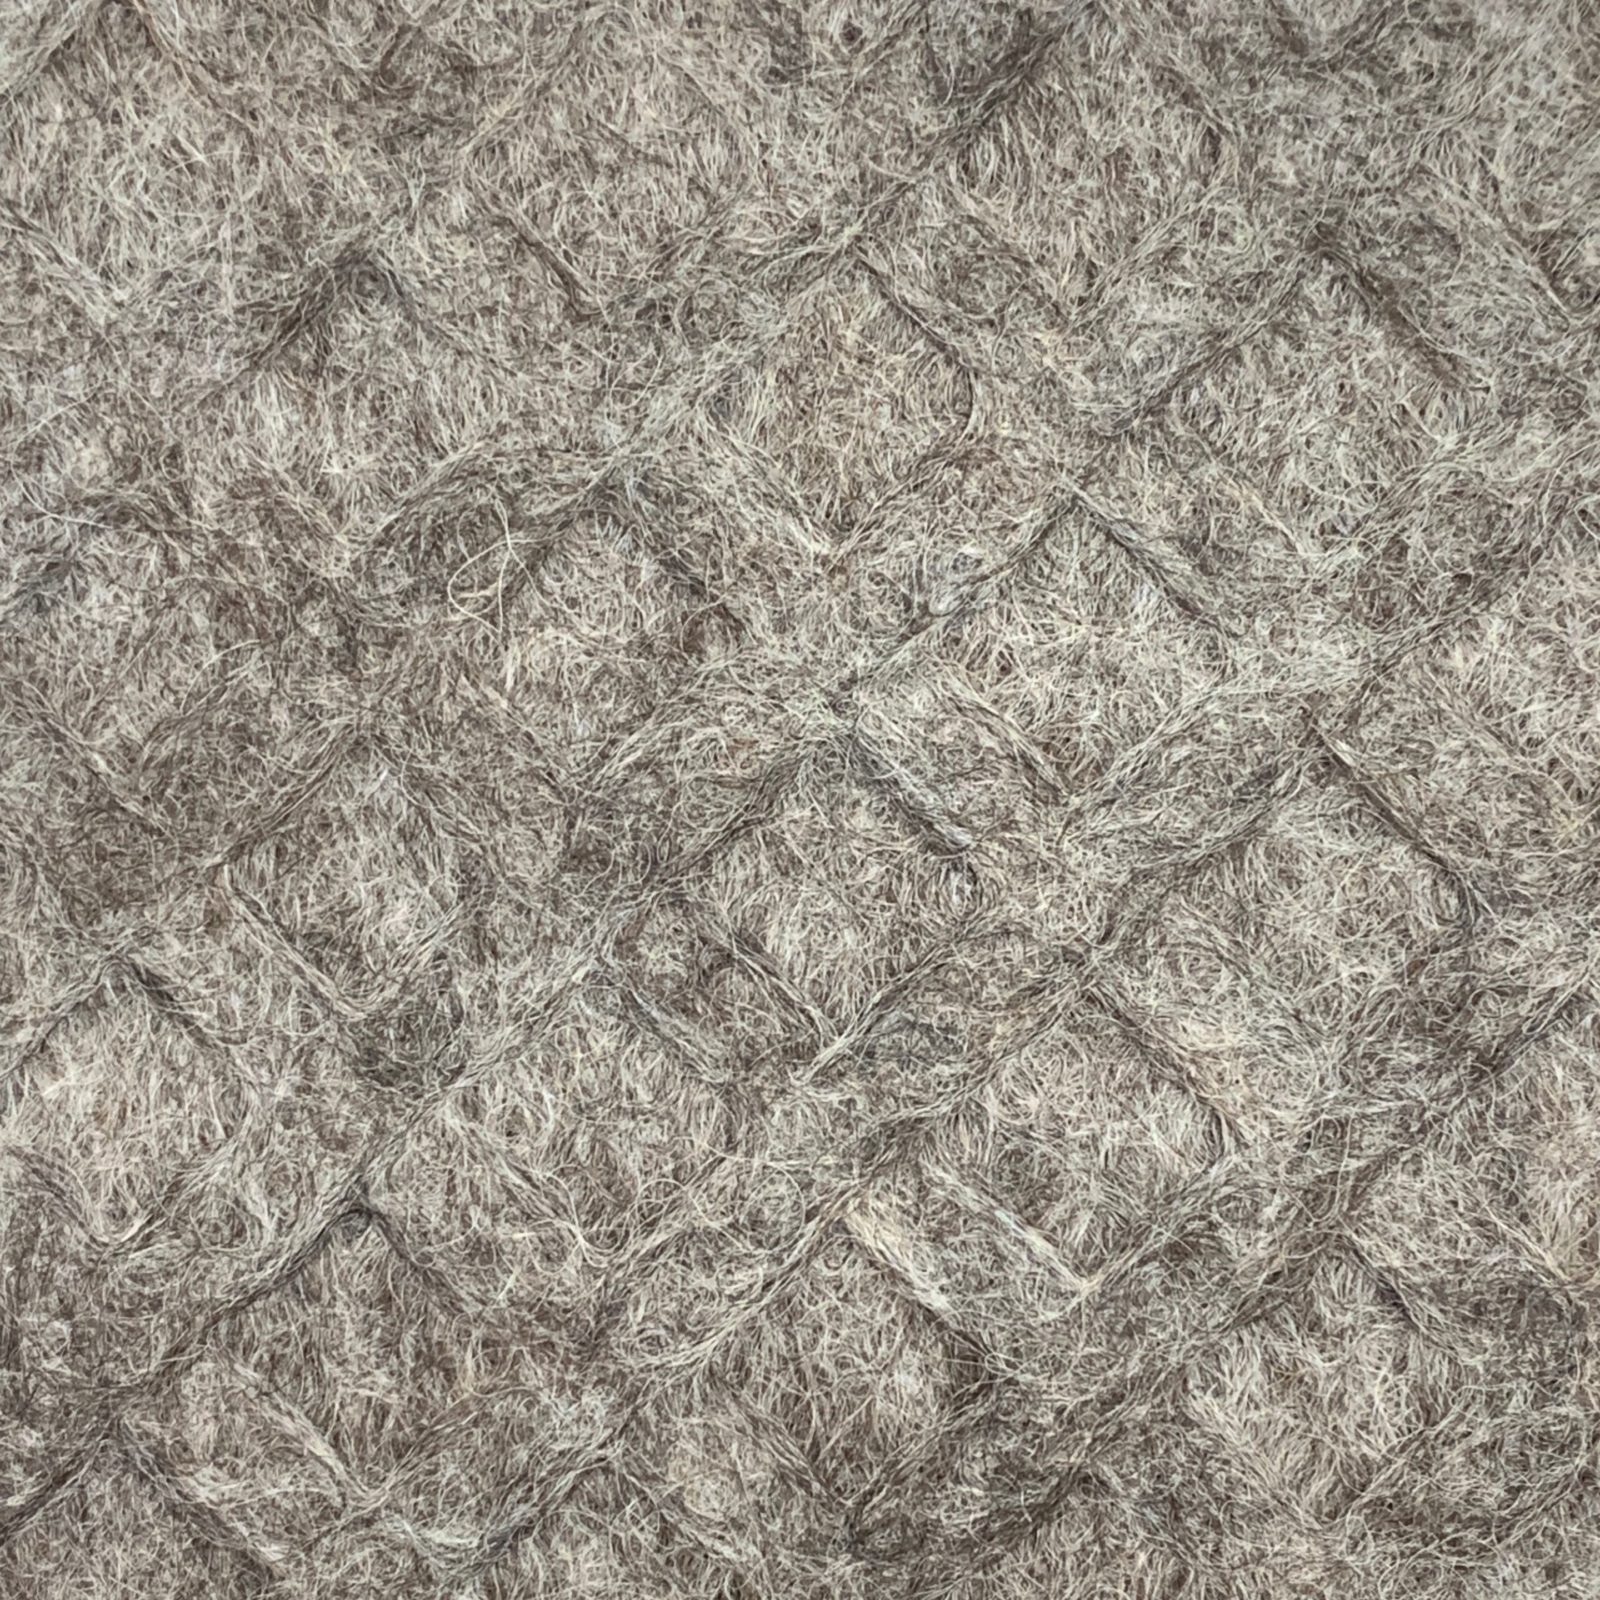 Alpaca Rug Yarn in Medium Silver Grey - 53 Ounces